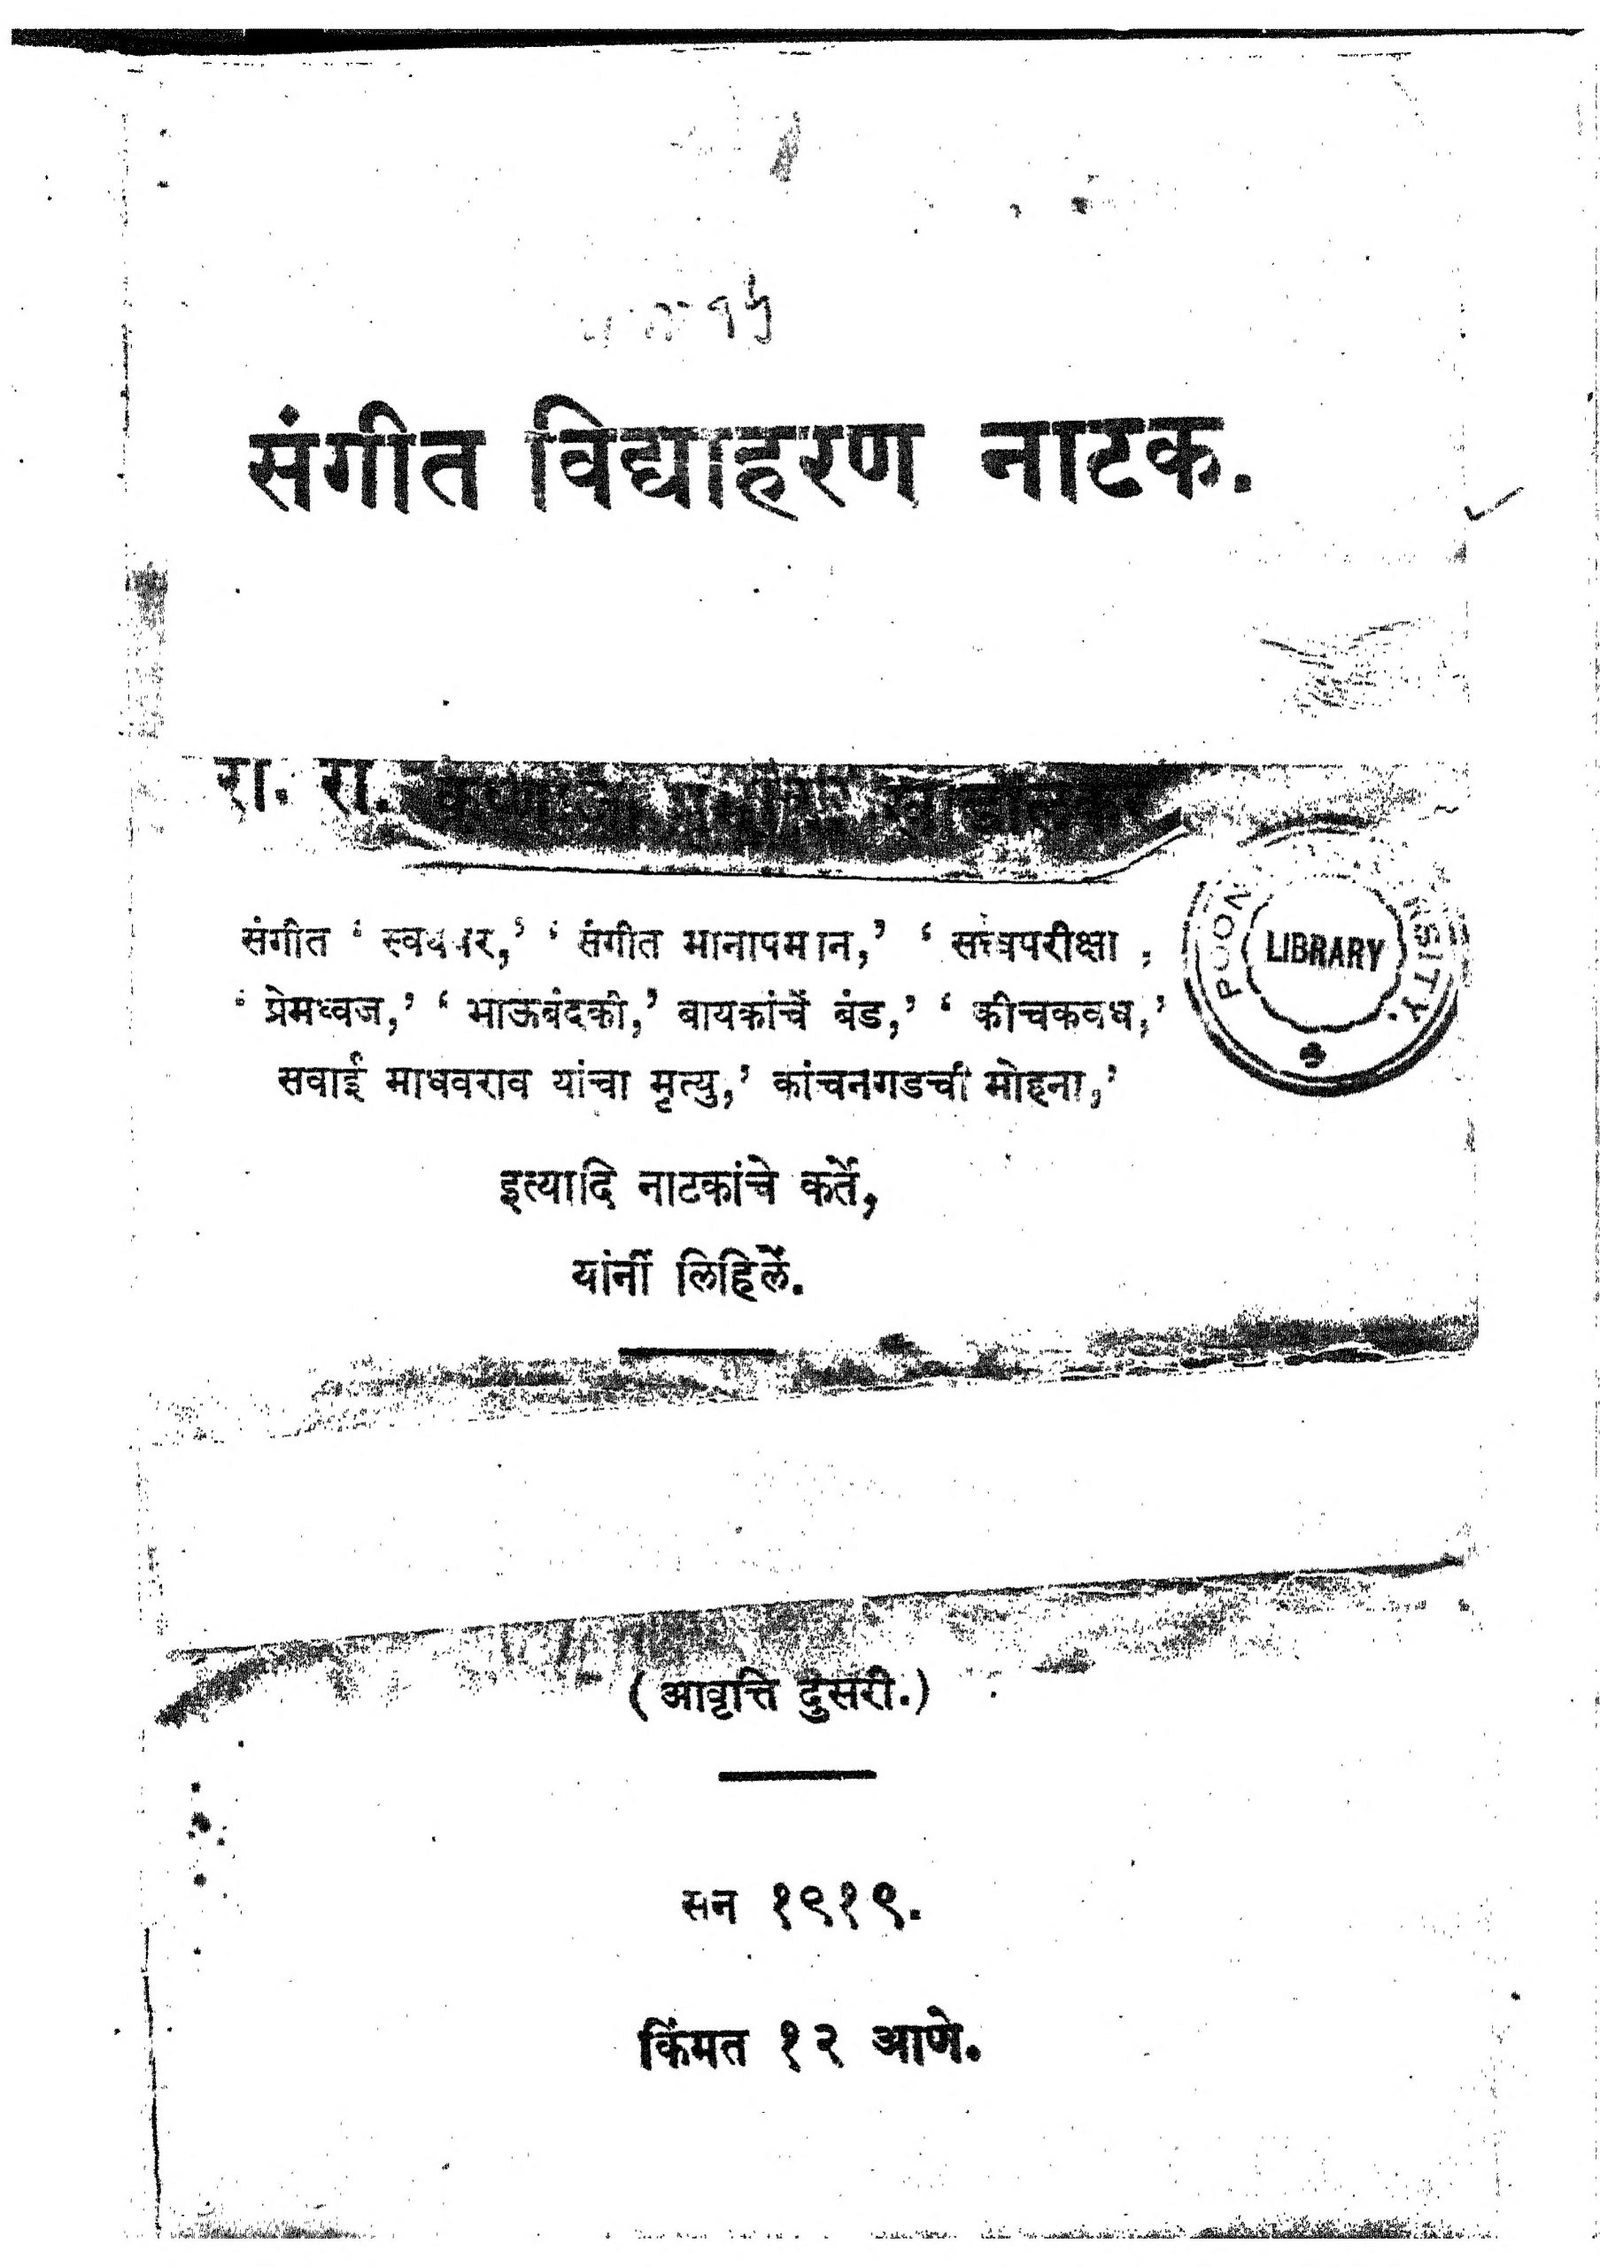 Sangeet Vidhyaharan Natak